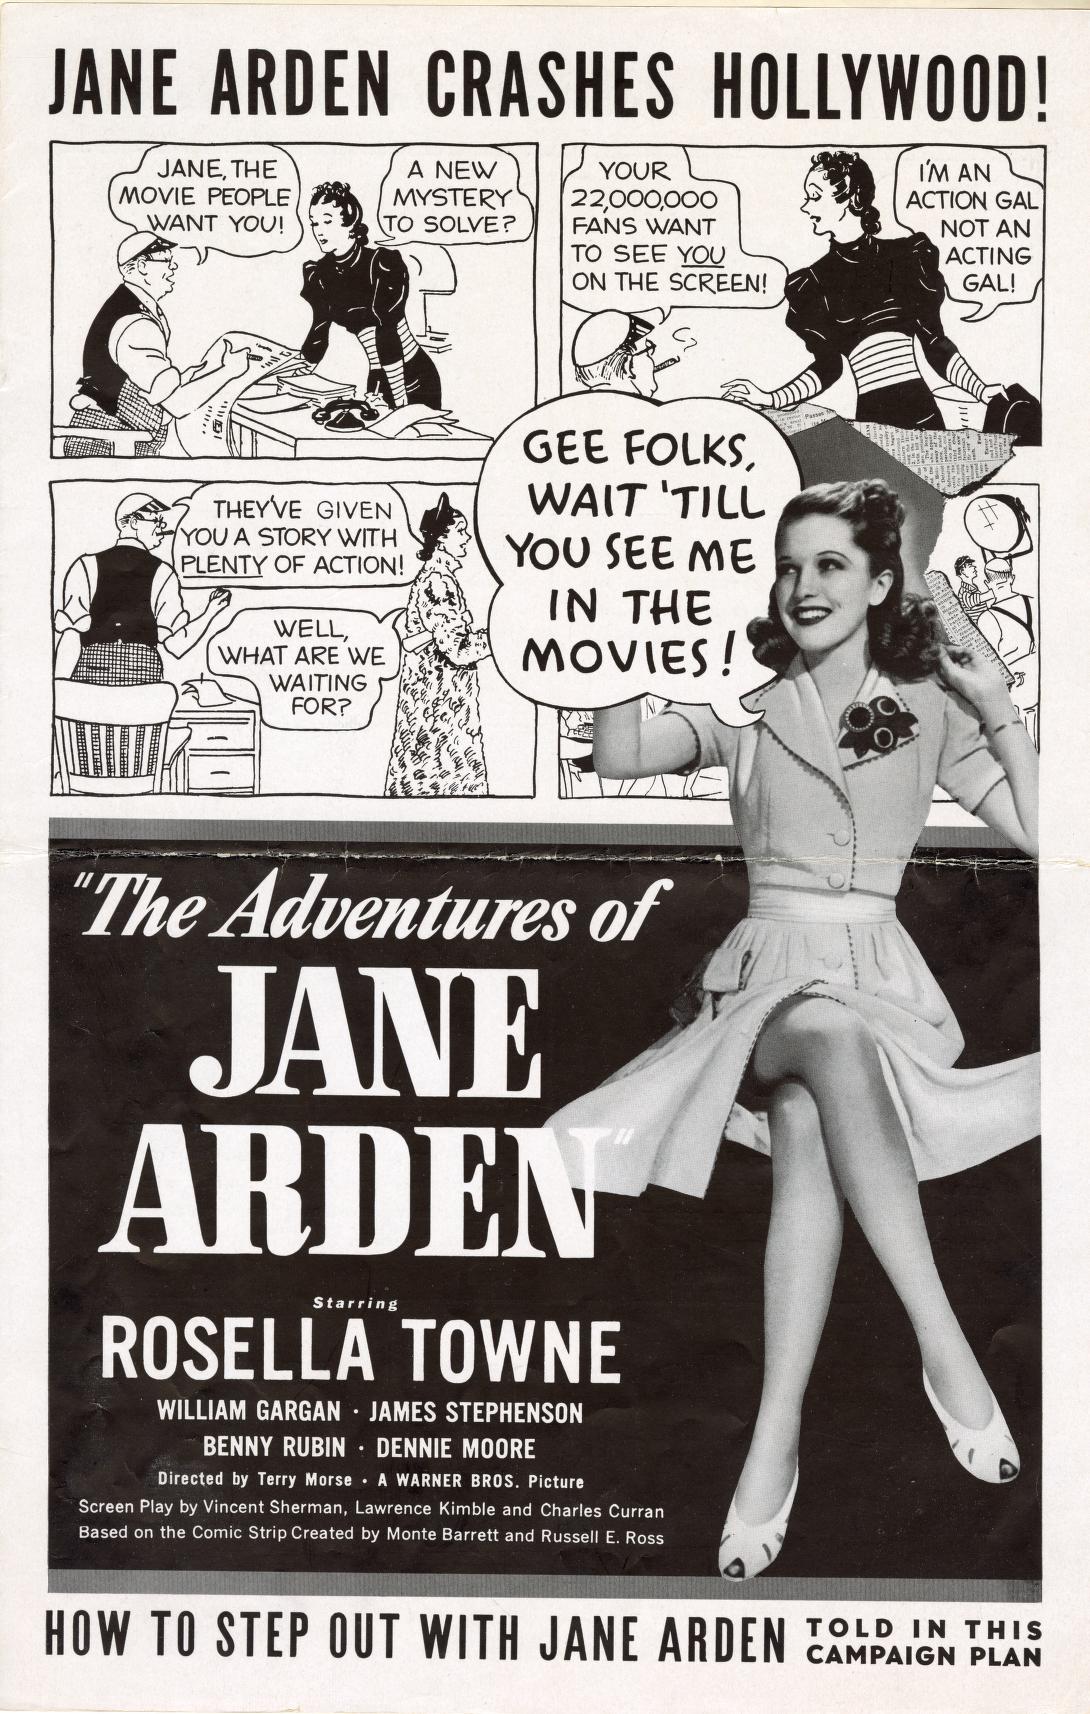 The Adventures of Jane Arden (Warner Bros.)